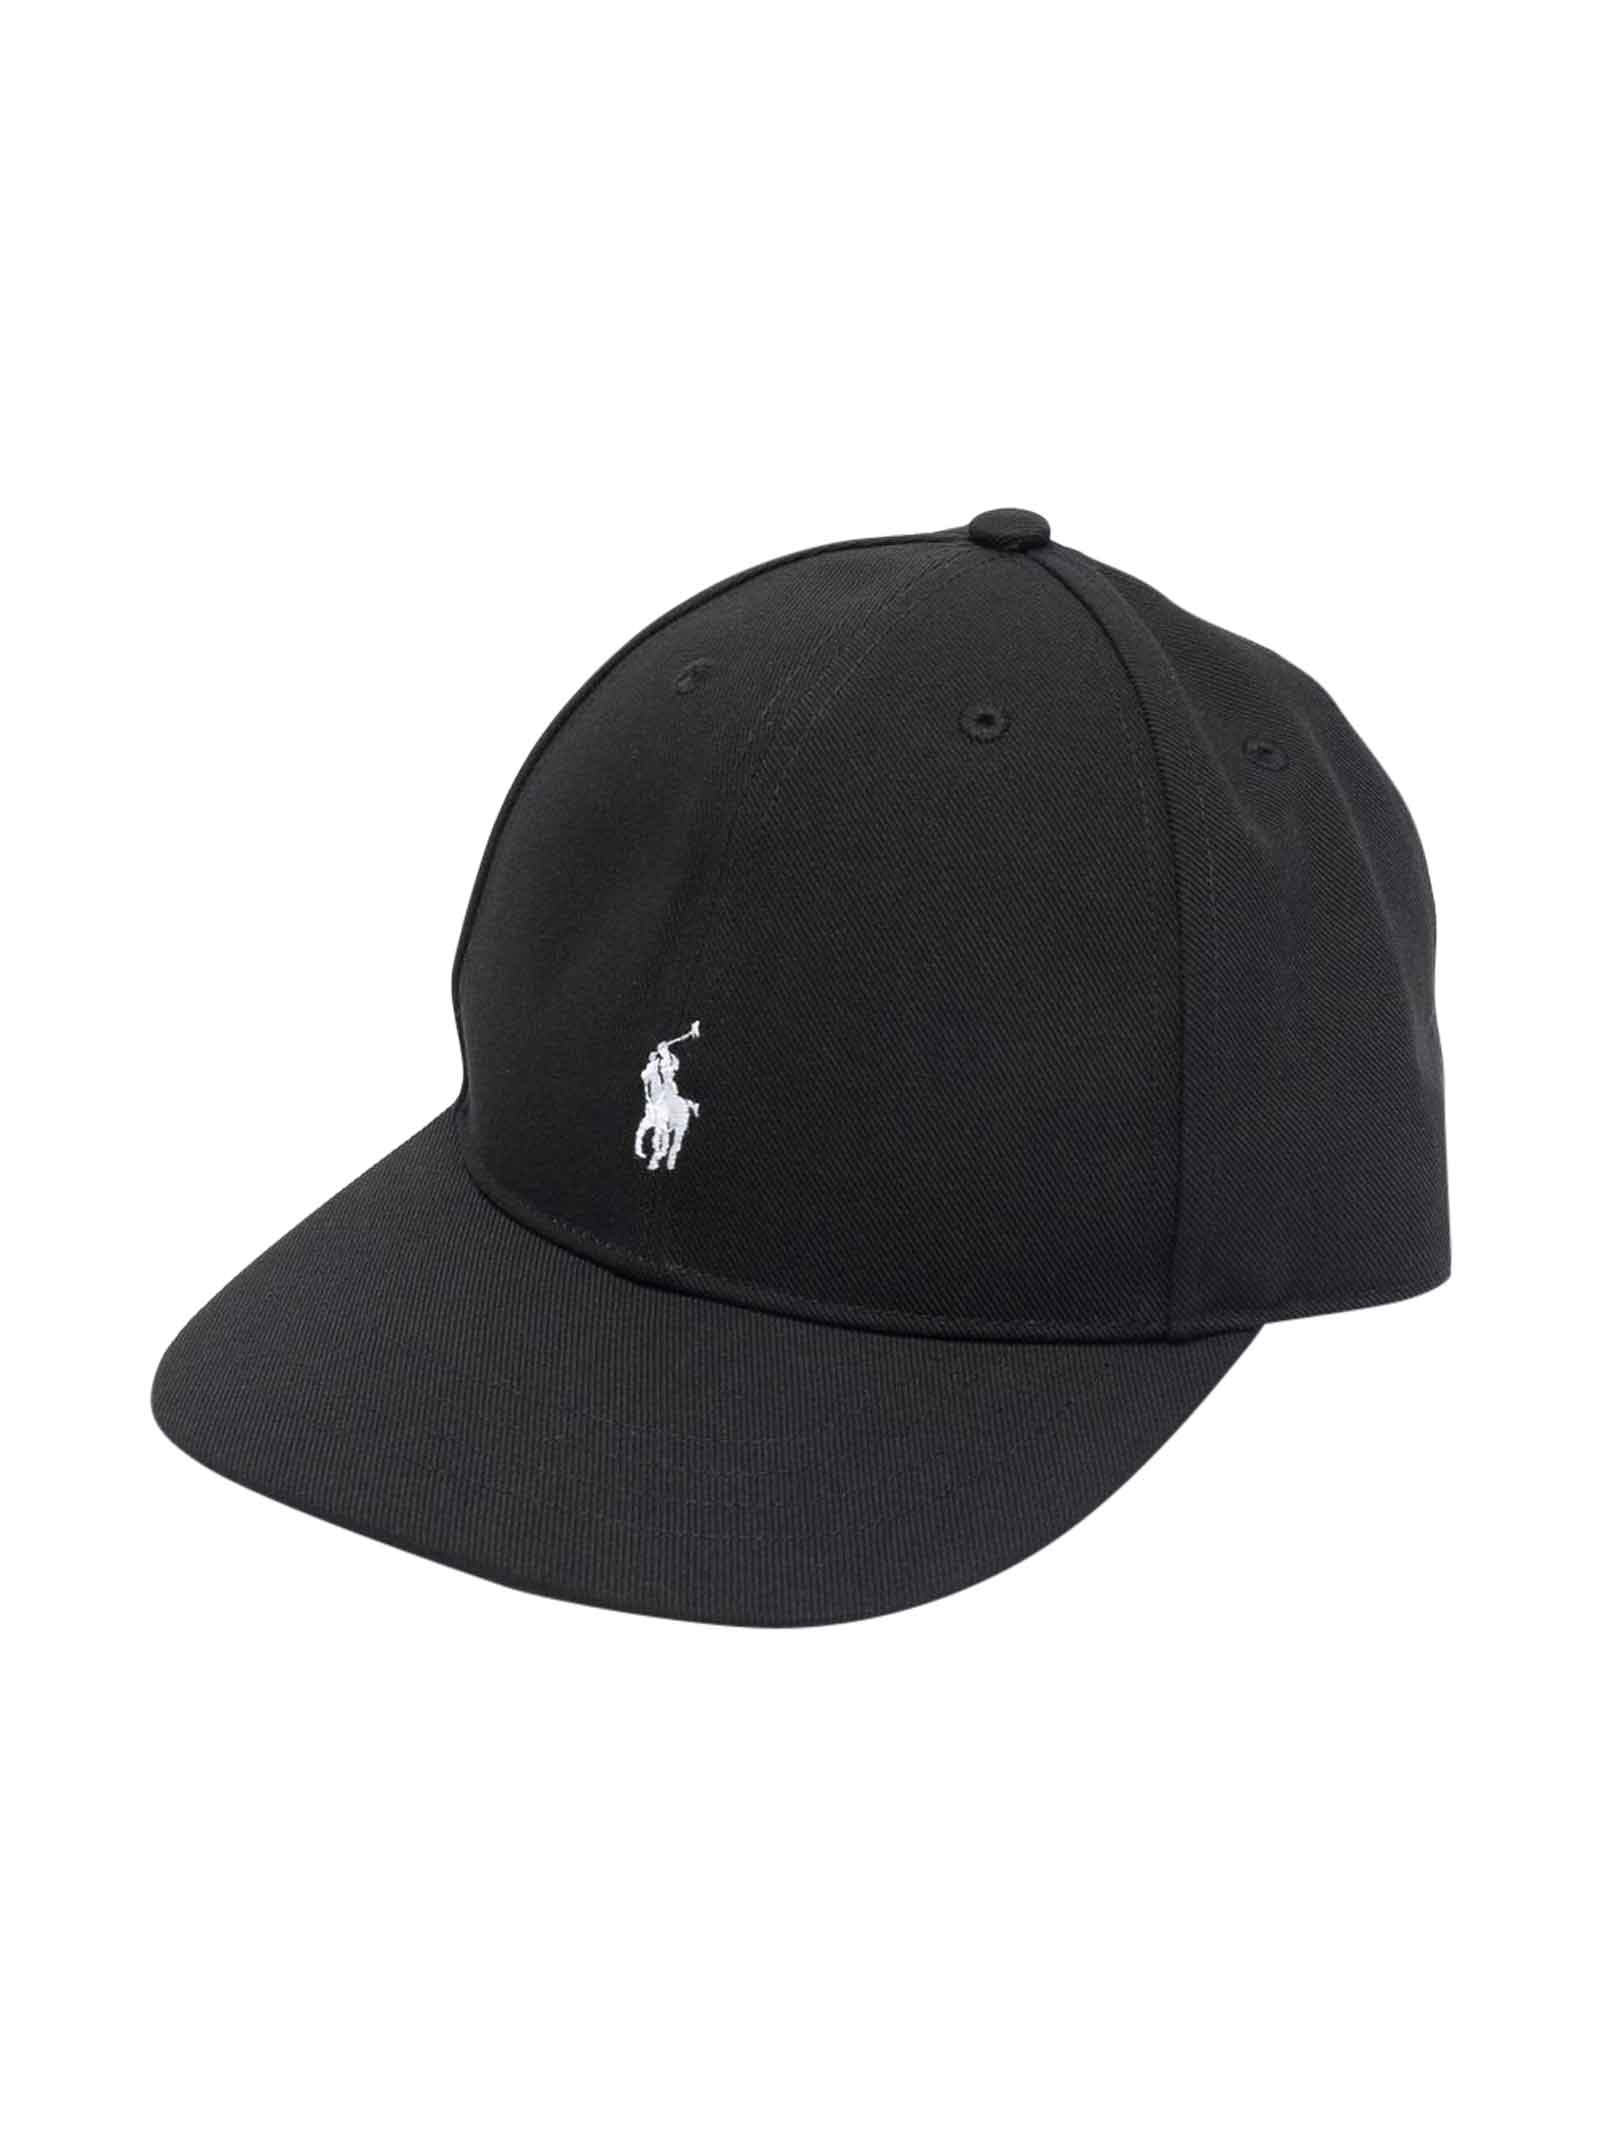 Ralph Lauren Black Hat Unisex